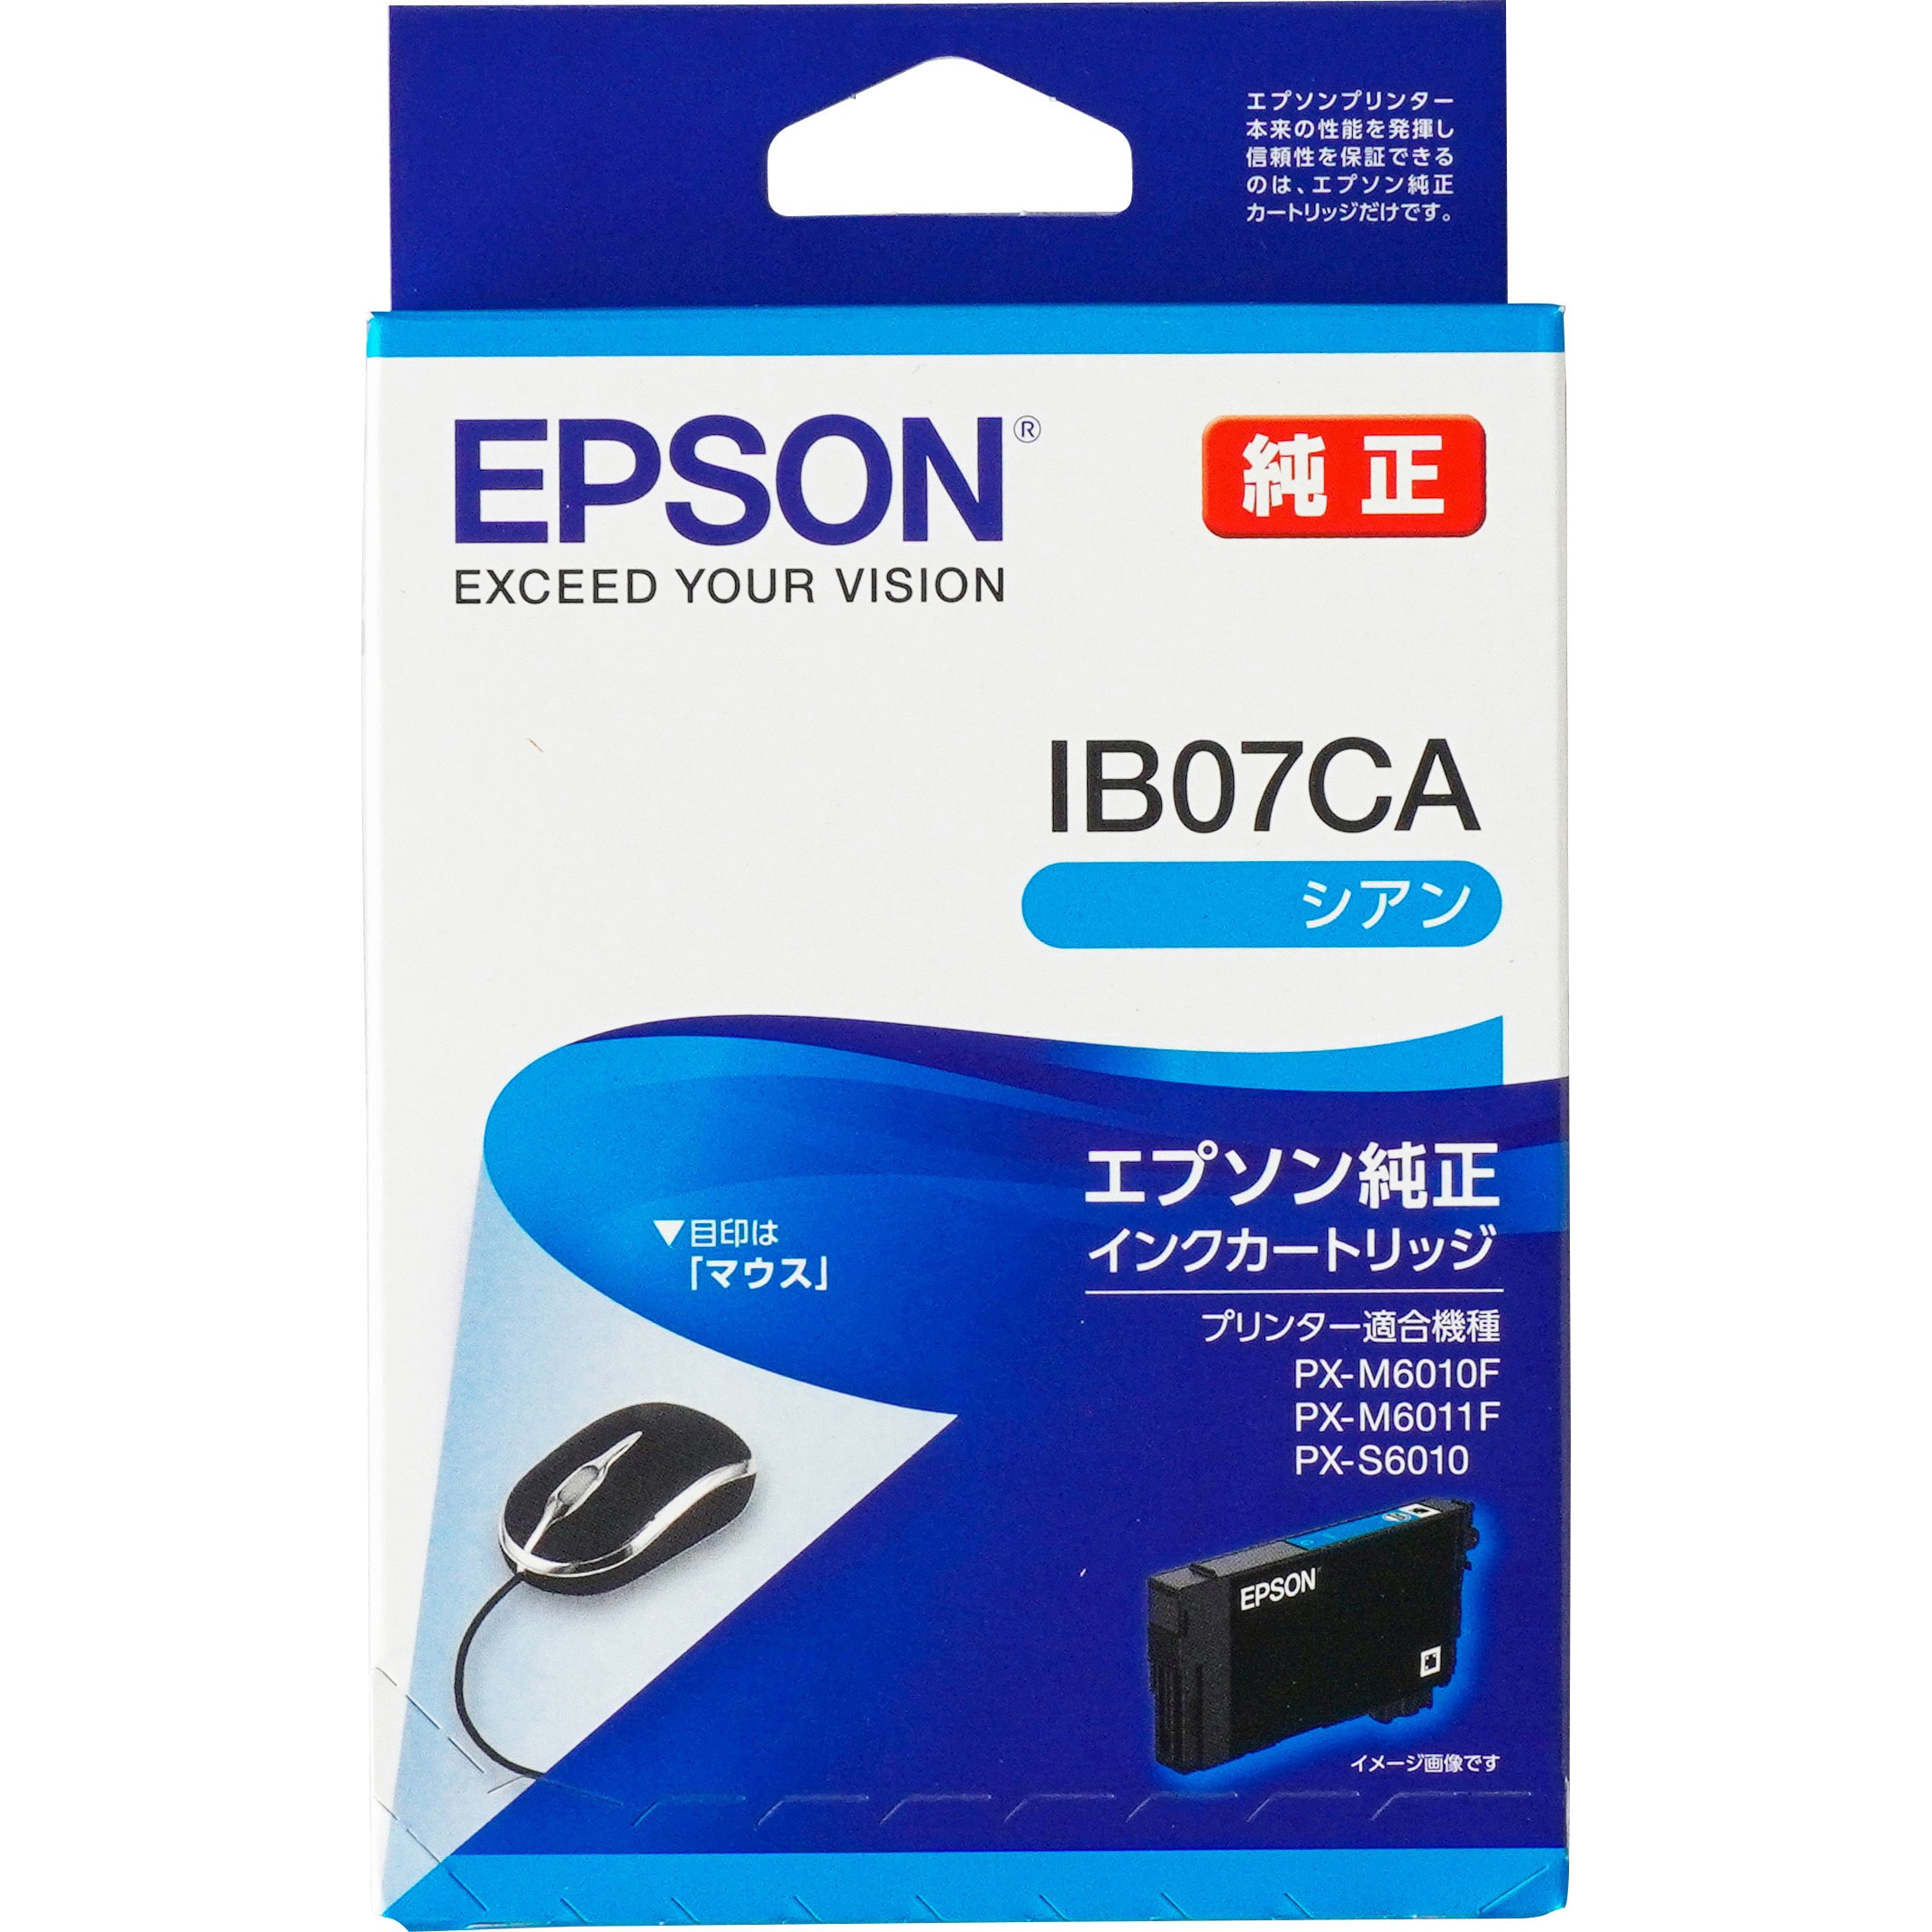 EPSONカラーインク - オフィス用品